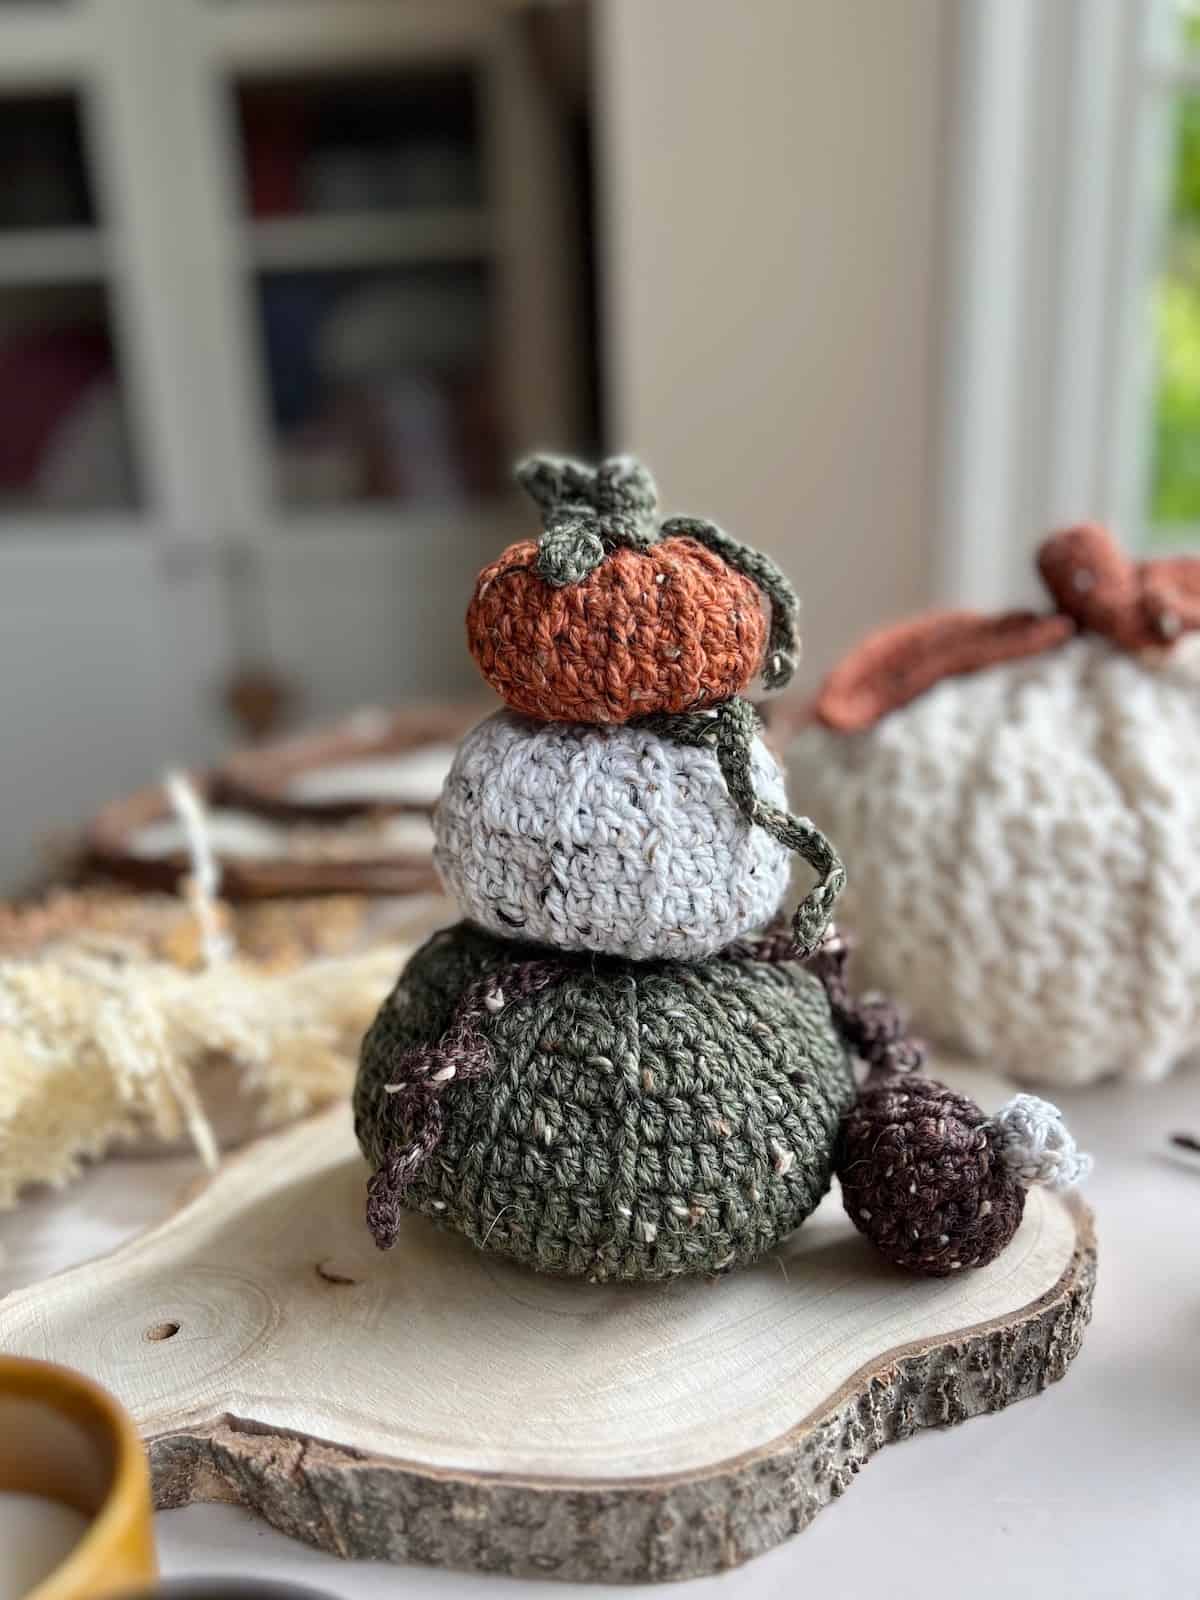 Easy Crochet Pumpkins Pattern In any yarn